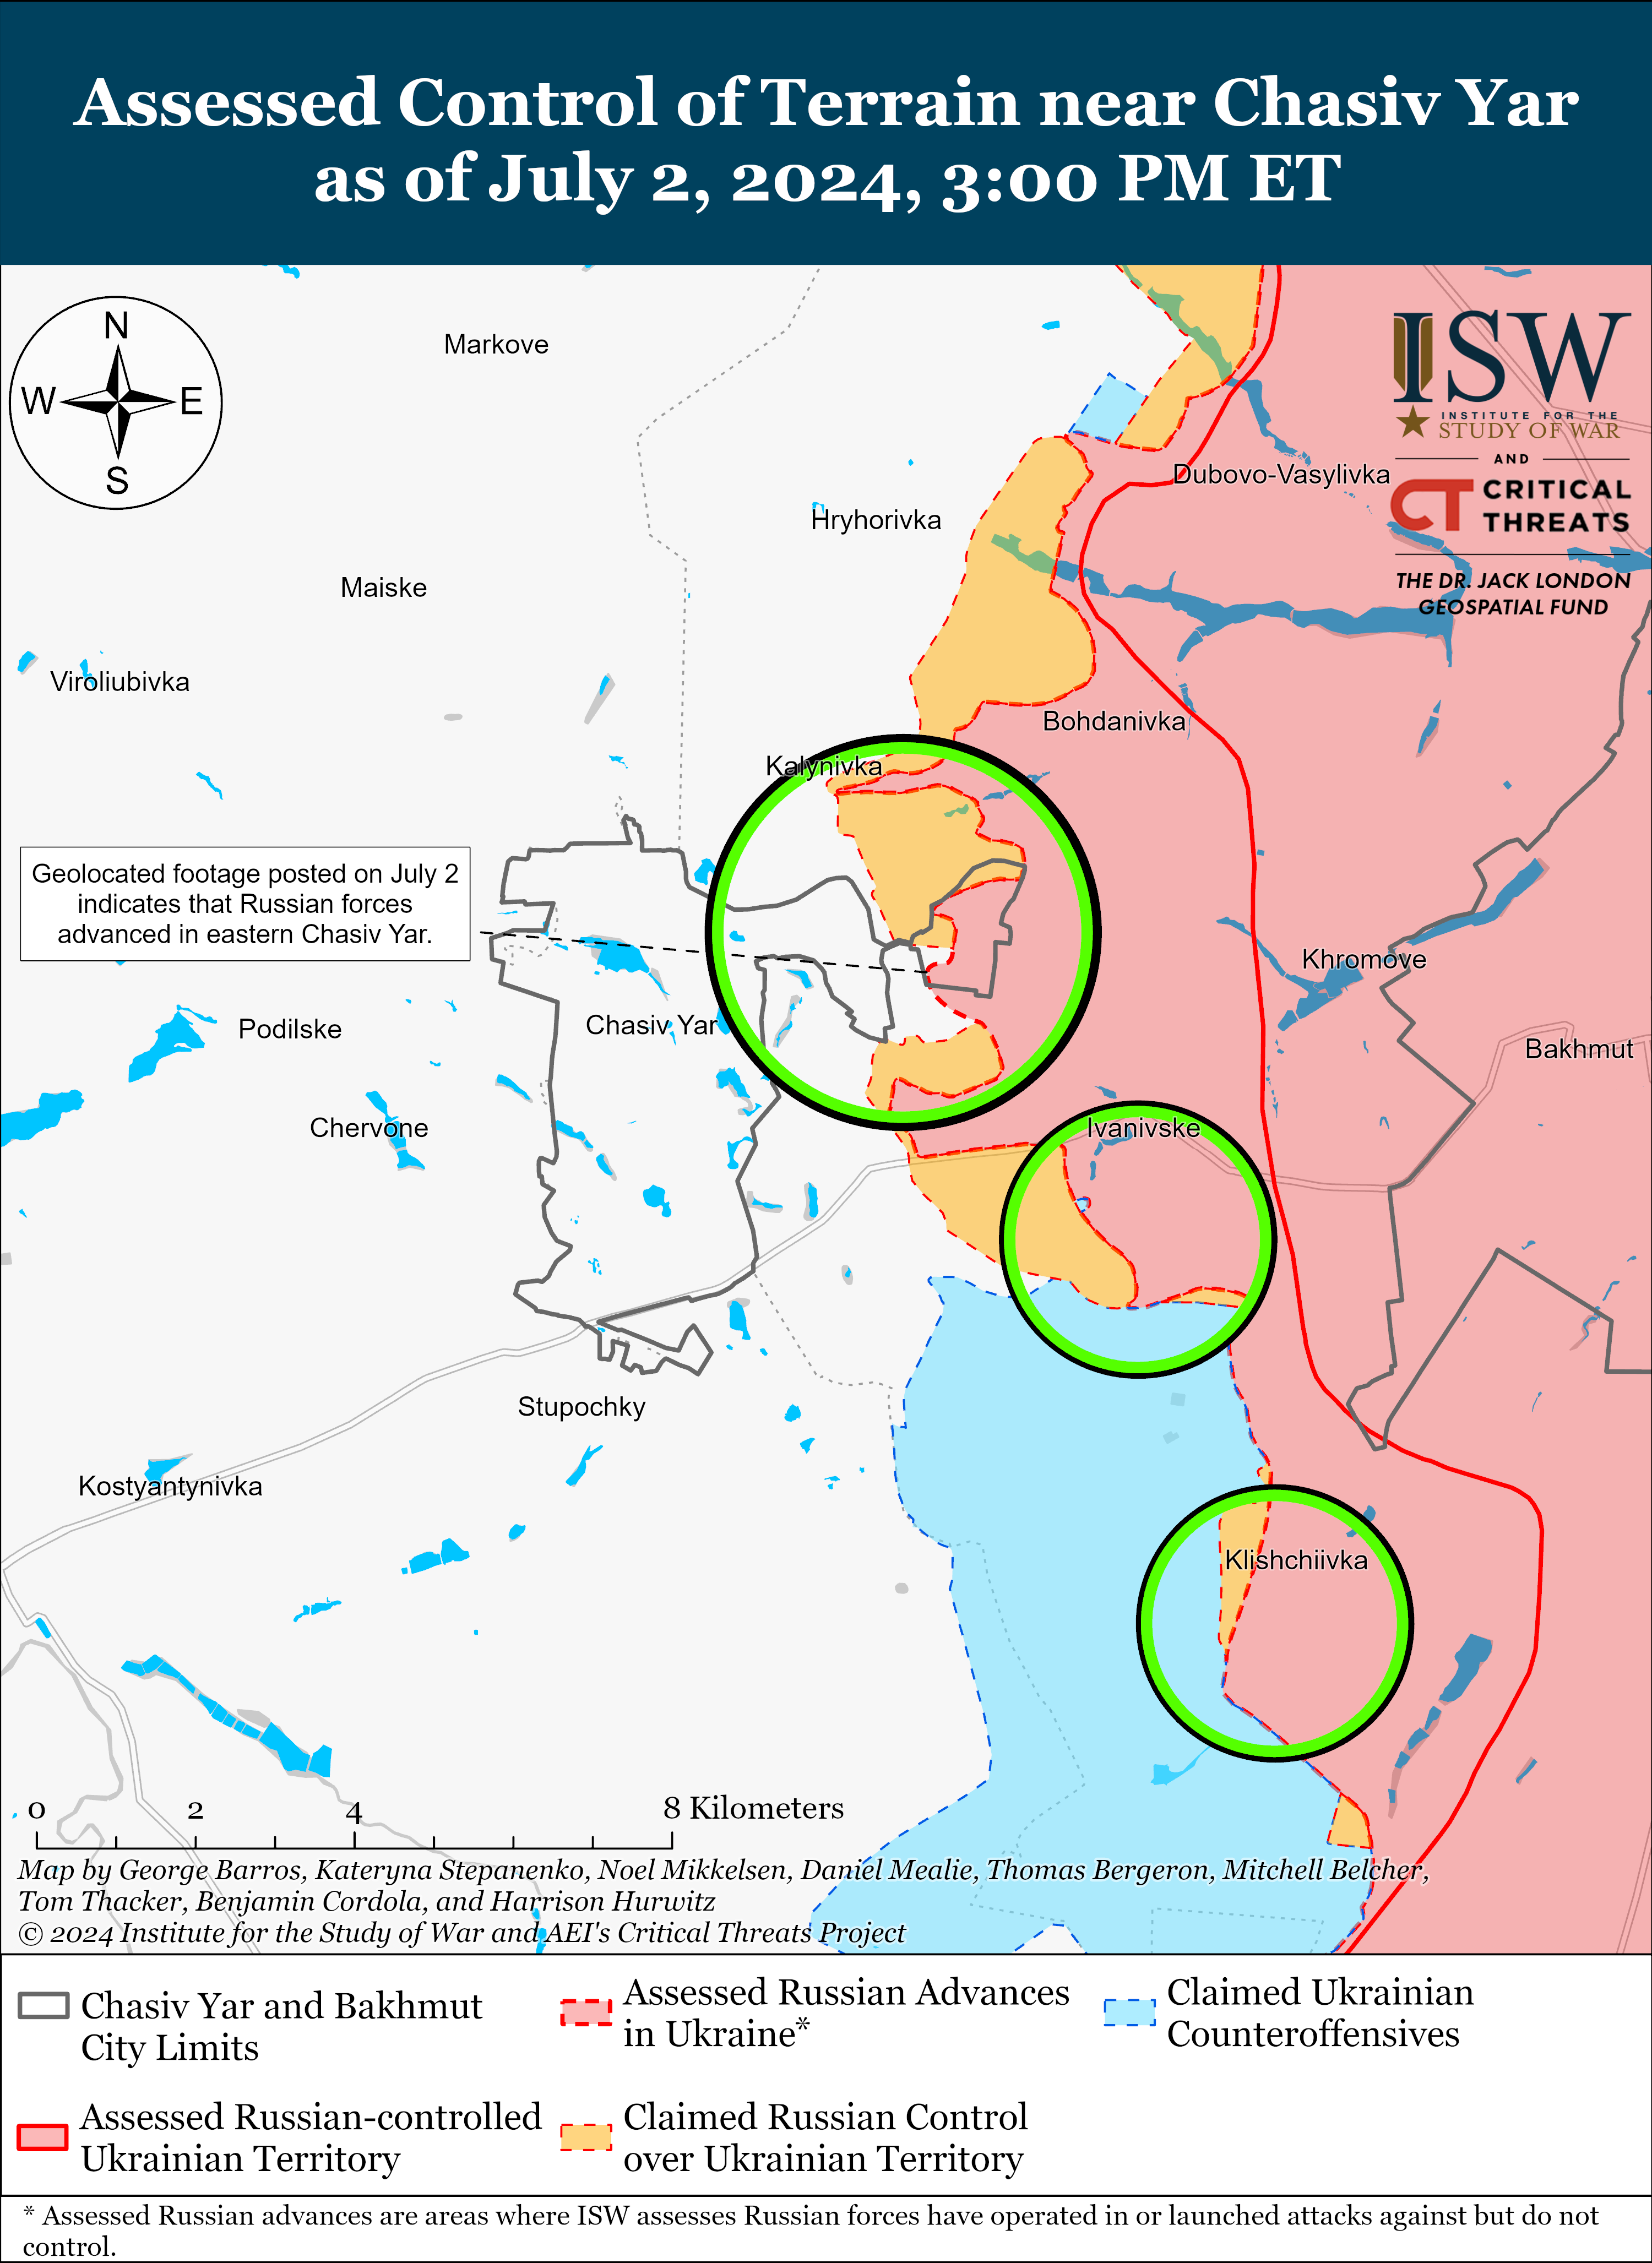 Враг продвинулся в Волчанске, Часовом Яру и около Авдеевки: карты ISW